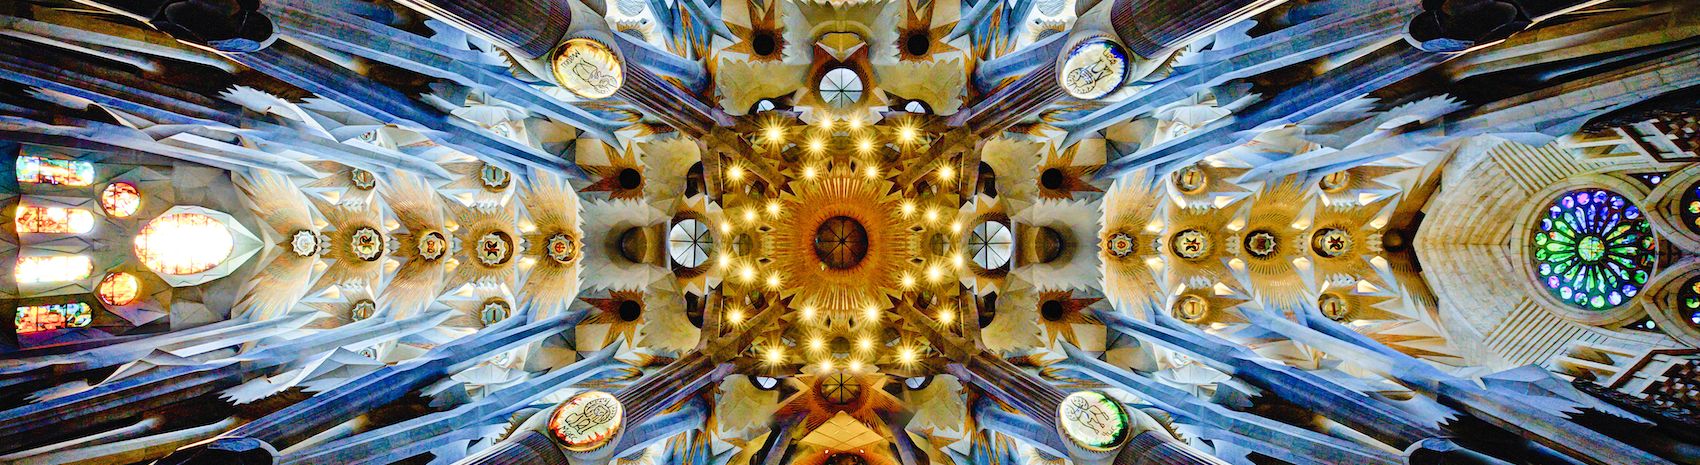 Interior of Sagrada Familia.